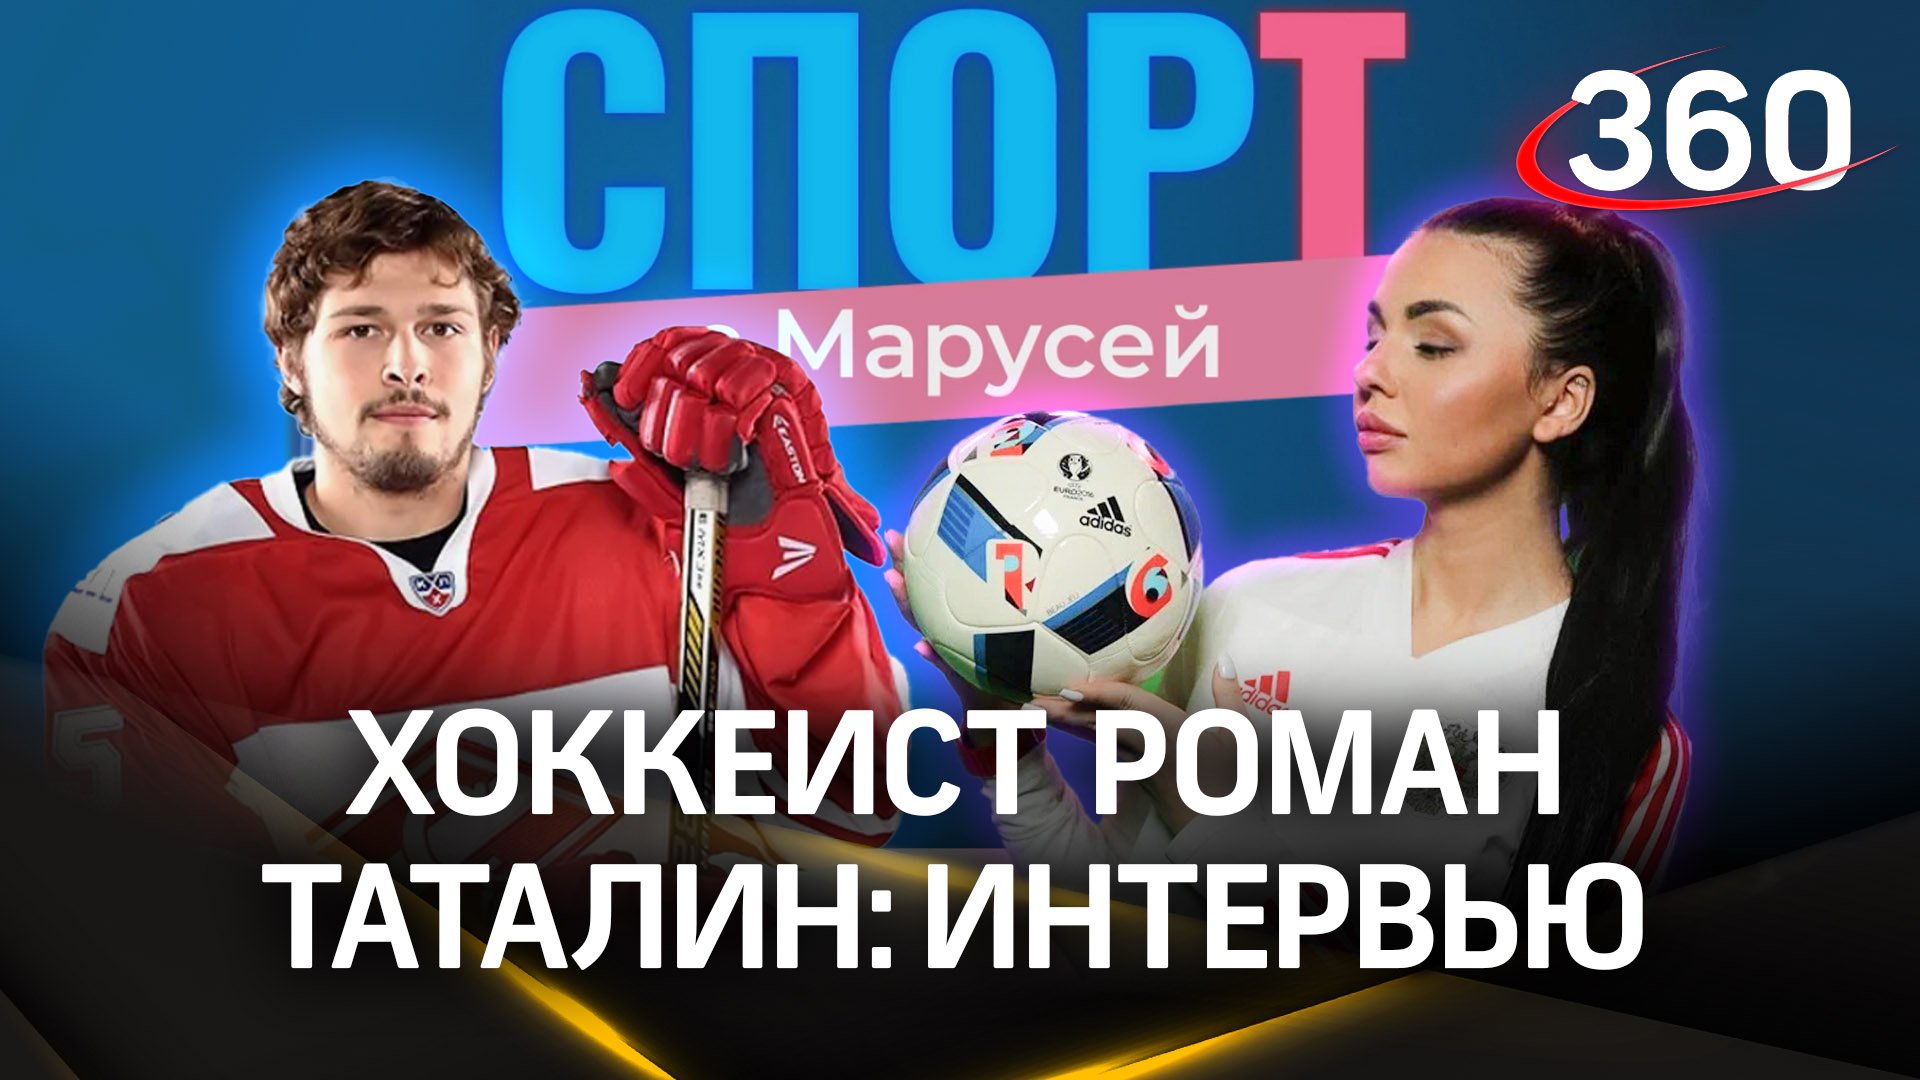 Хоккеист Роман Таталин: «Я скептически отношусь к Медиа Лиге». Спорт с Марусей